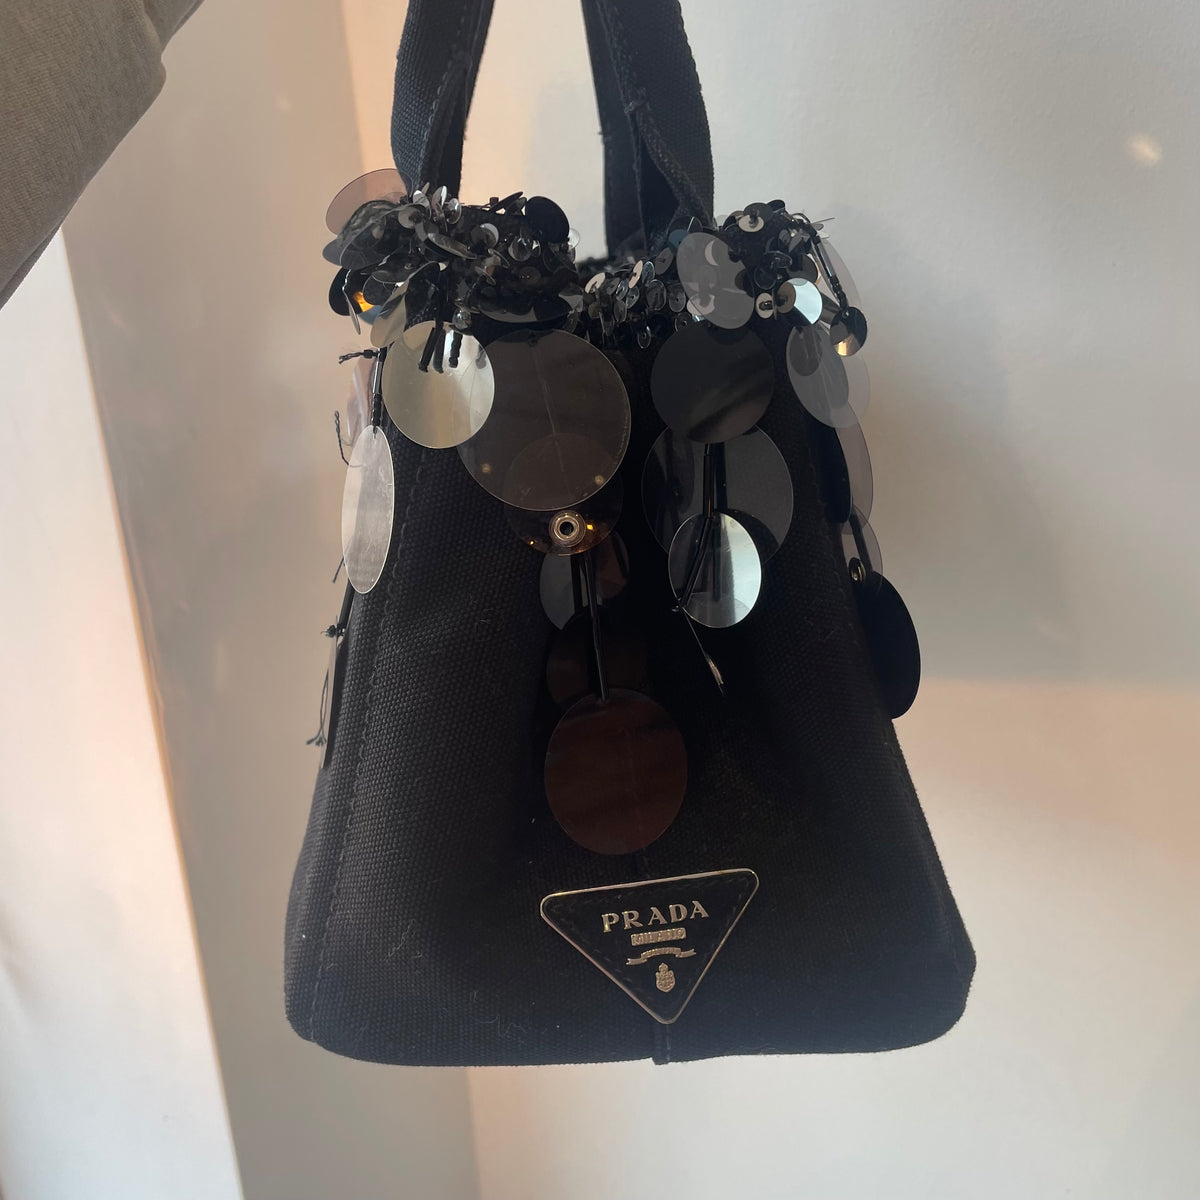 Prada Canapa sequin satchel Black/silver O/S